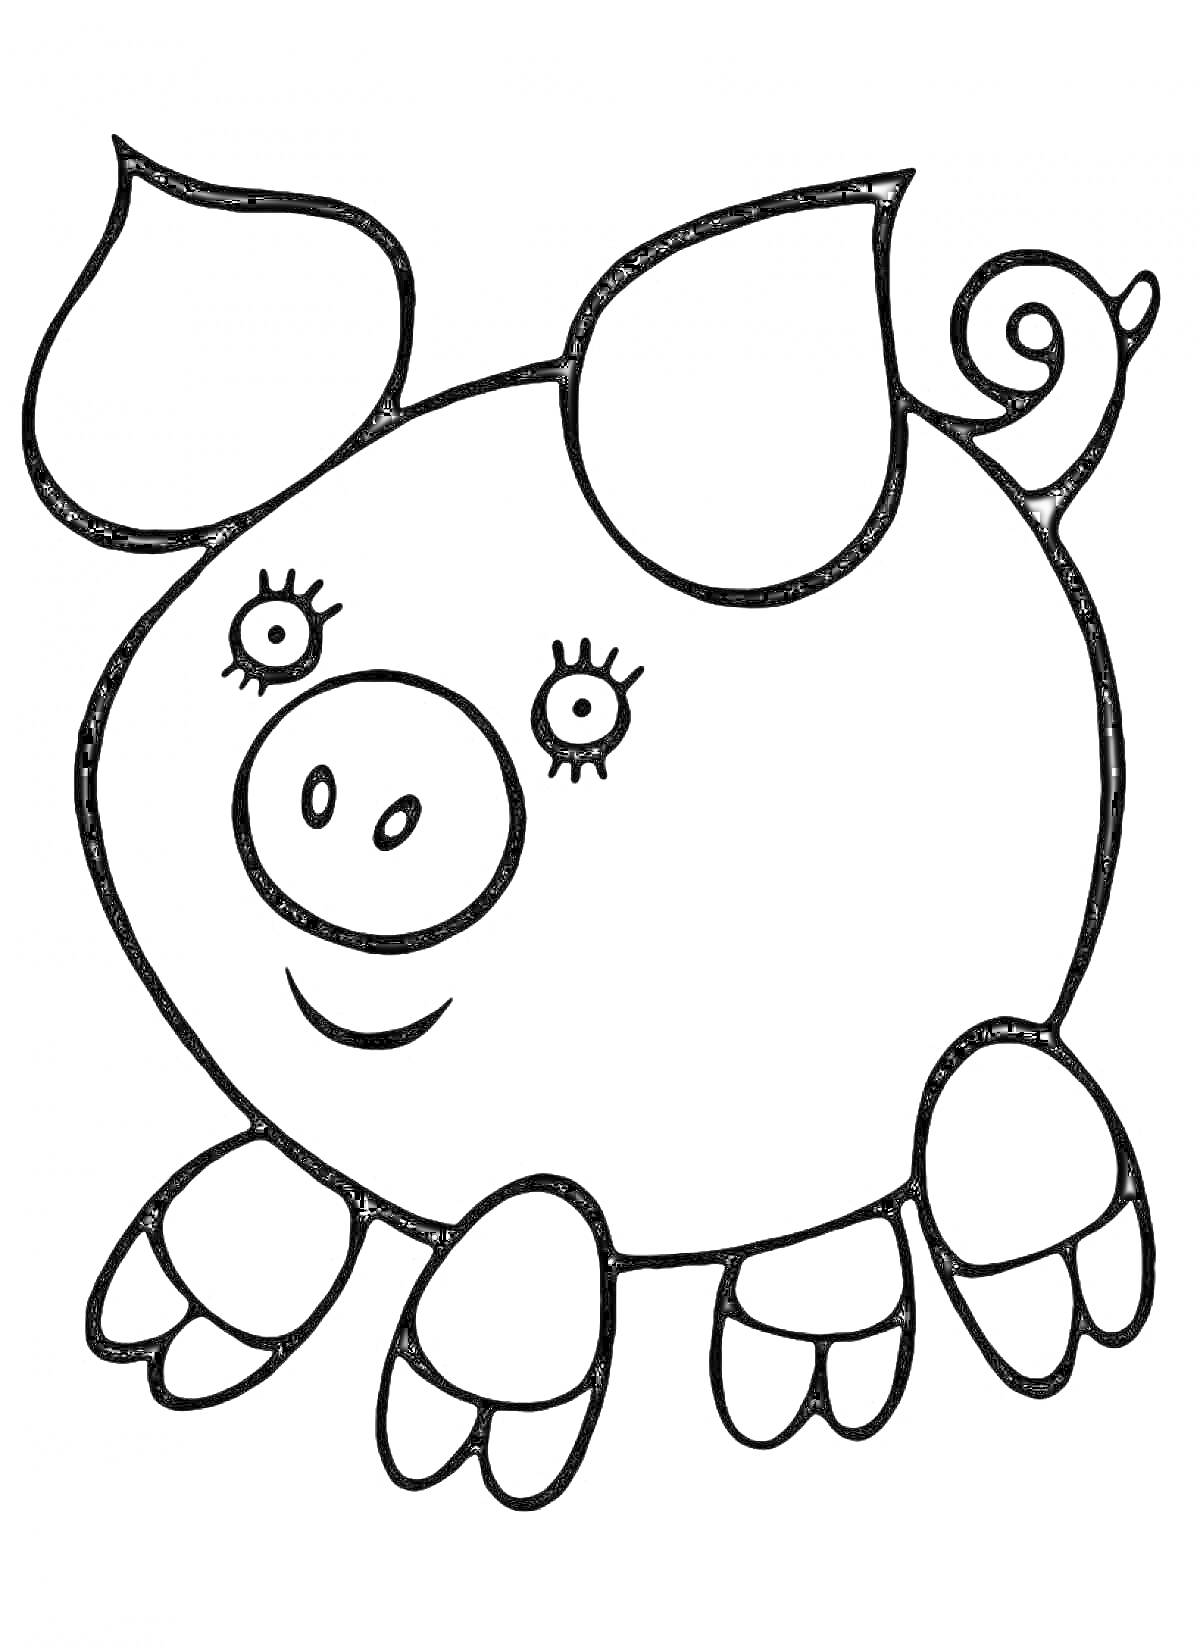 Раскраска Свинка с ресничками и хвостиком-крючком